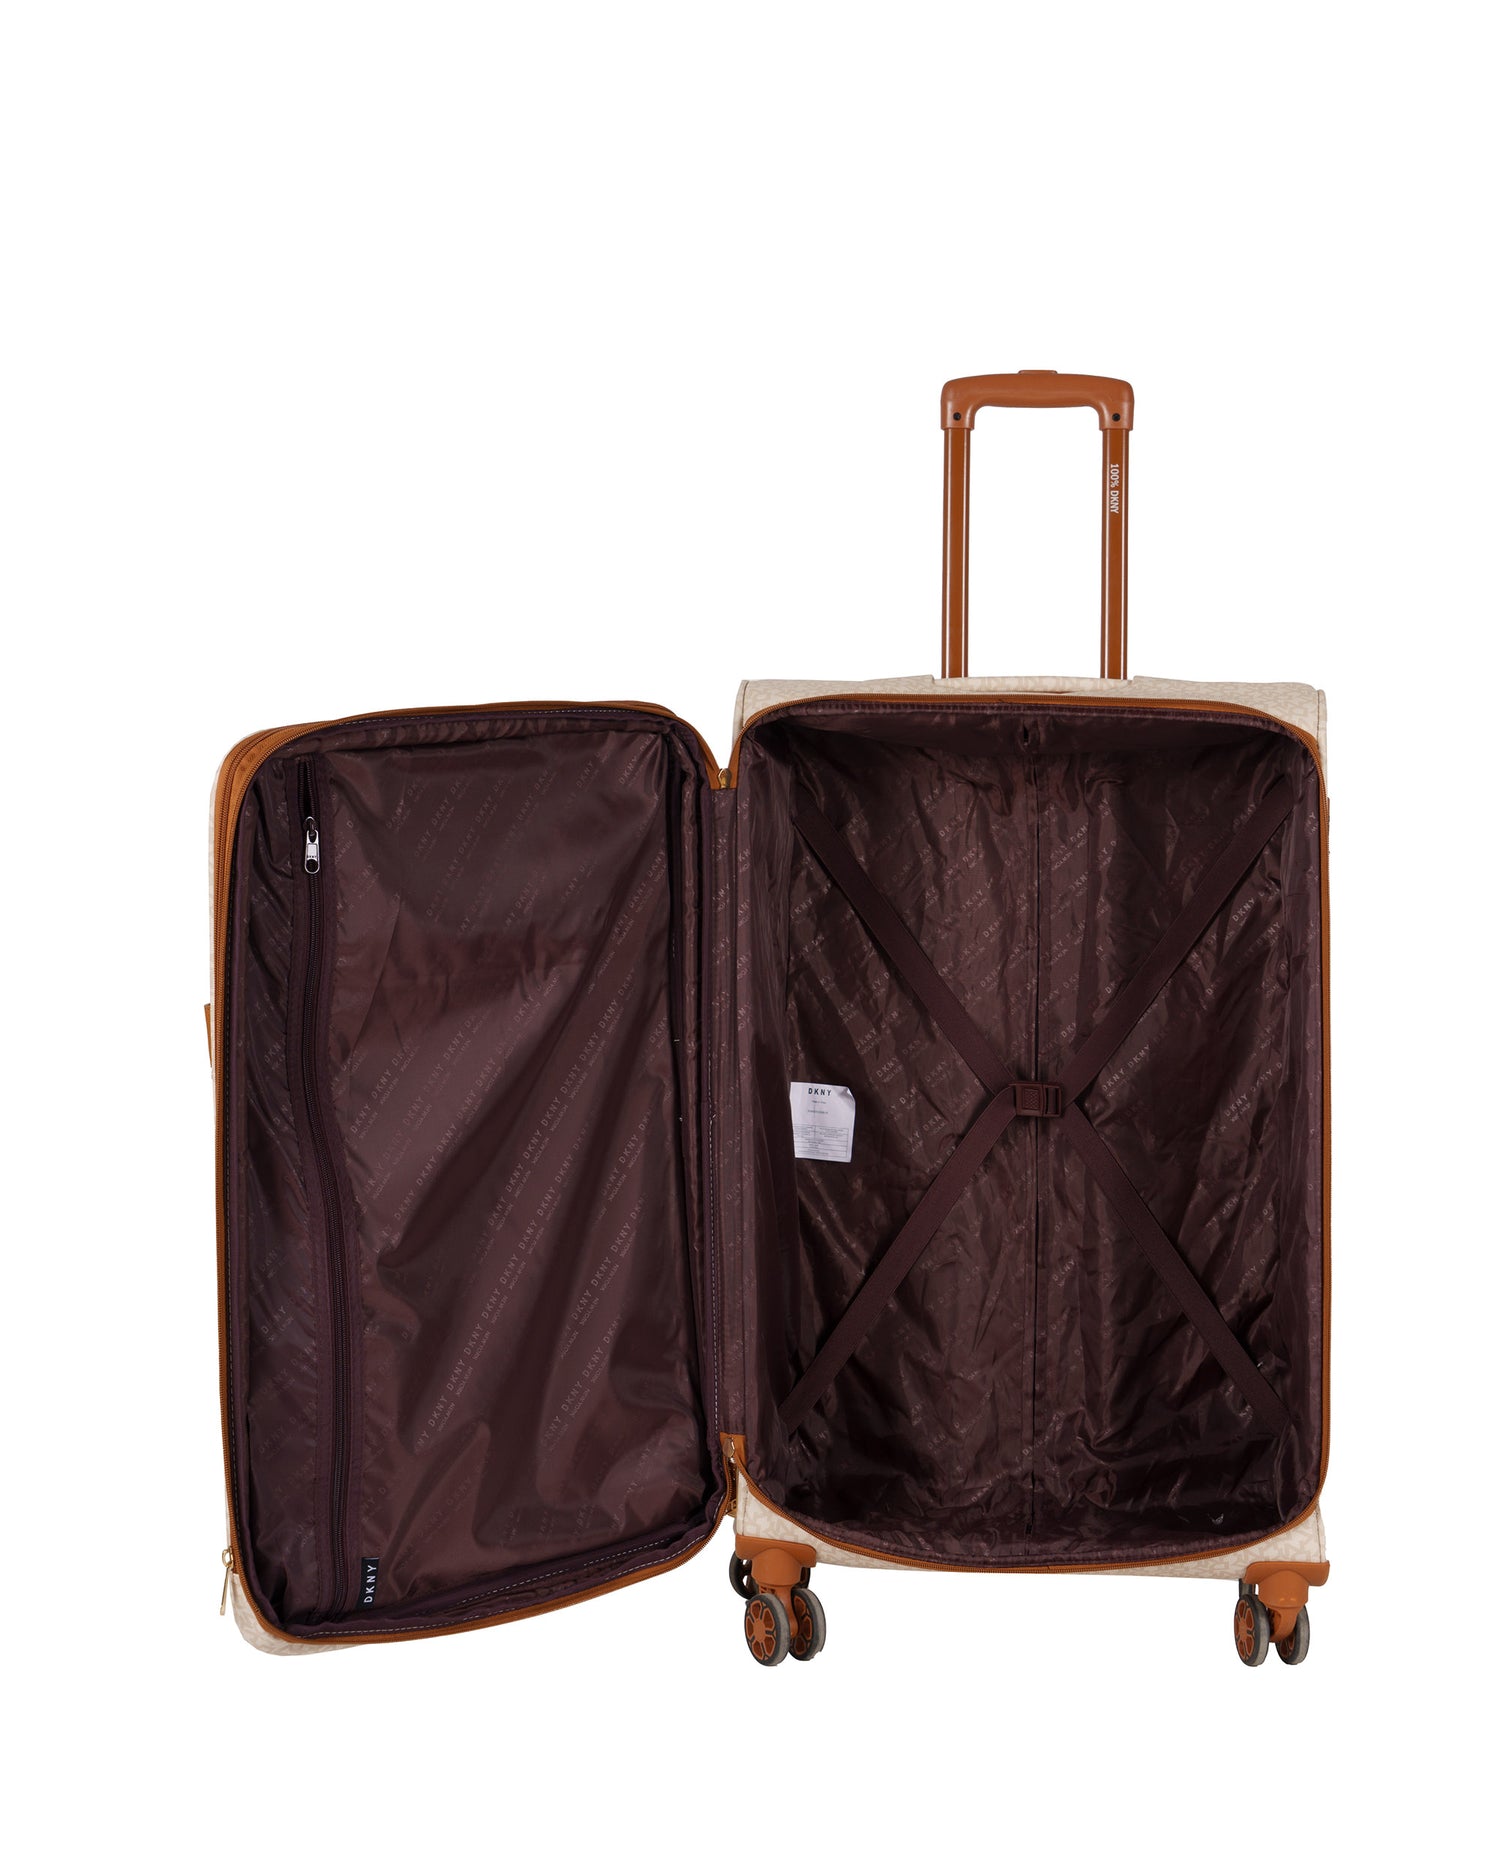 DKNY Beige Large Luggage